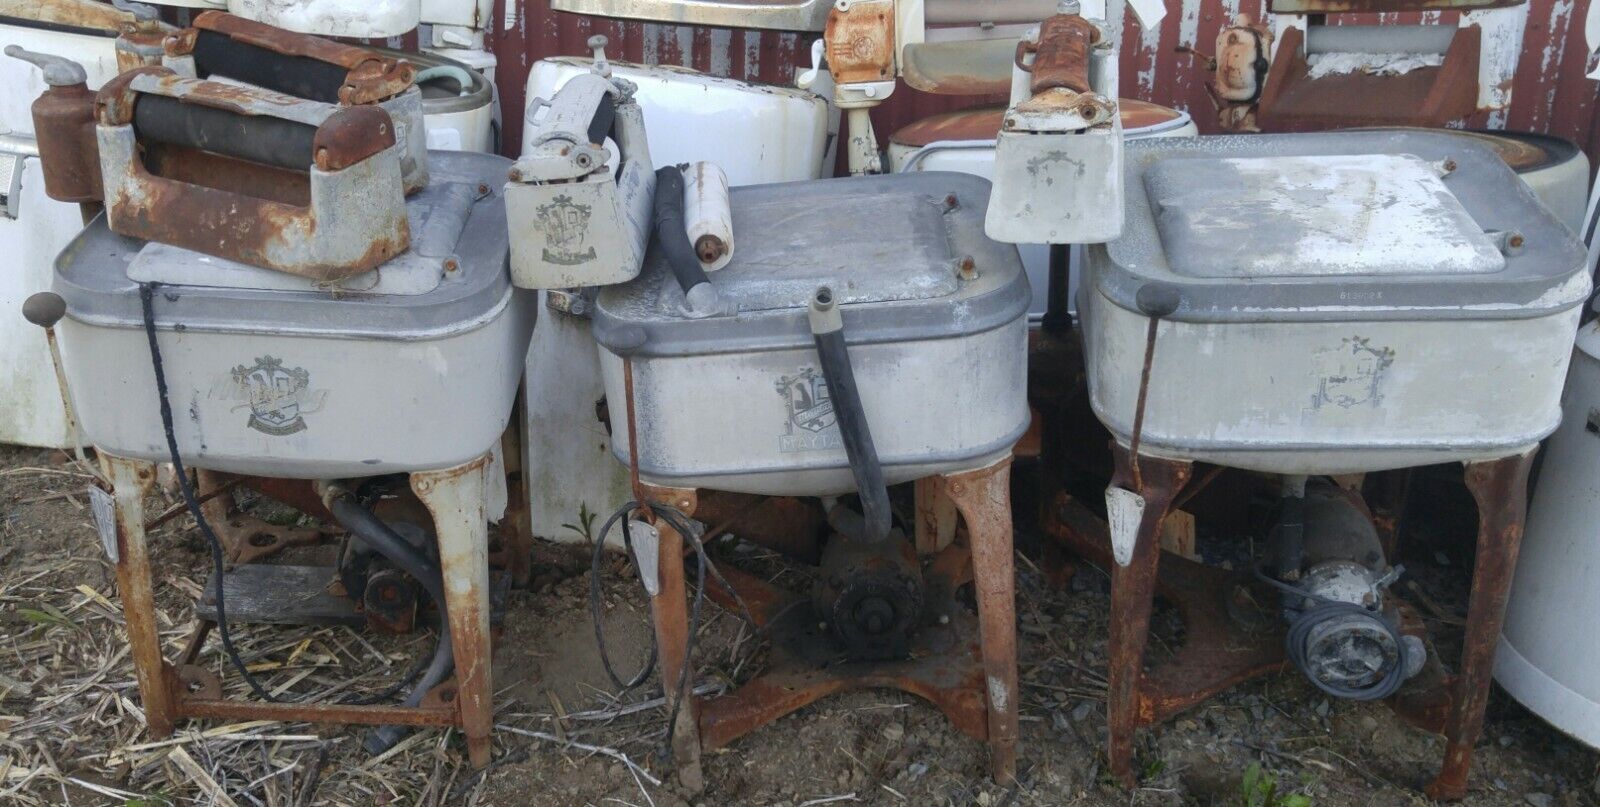 Collection Of 29 Antique Wringer Washing Machines Vintage Ringer Washer Machine Без бренда - фотография #7